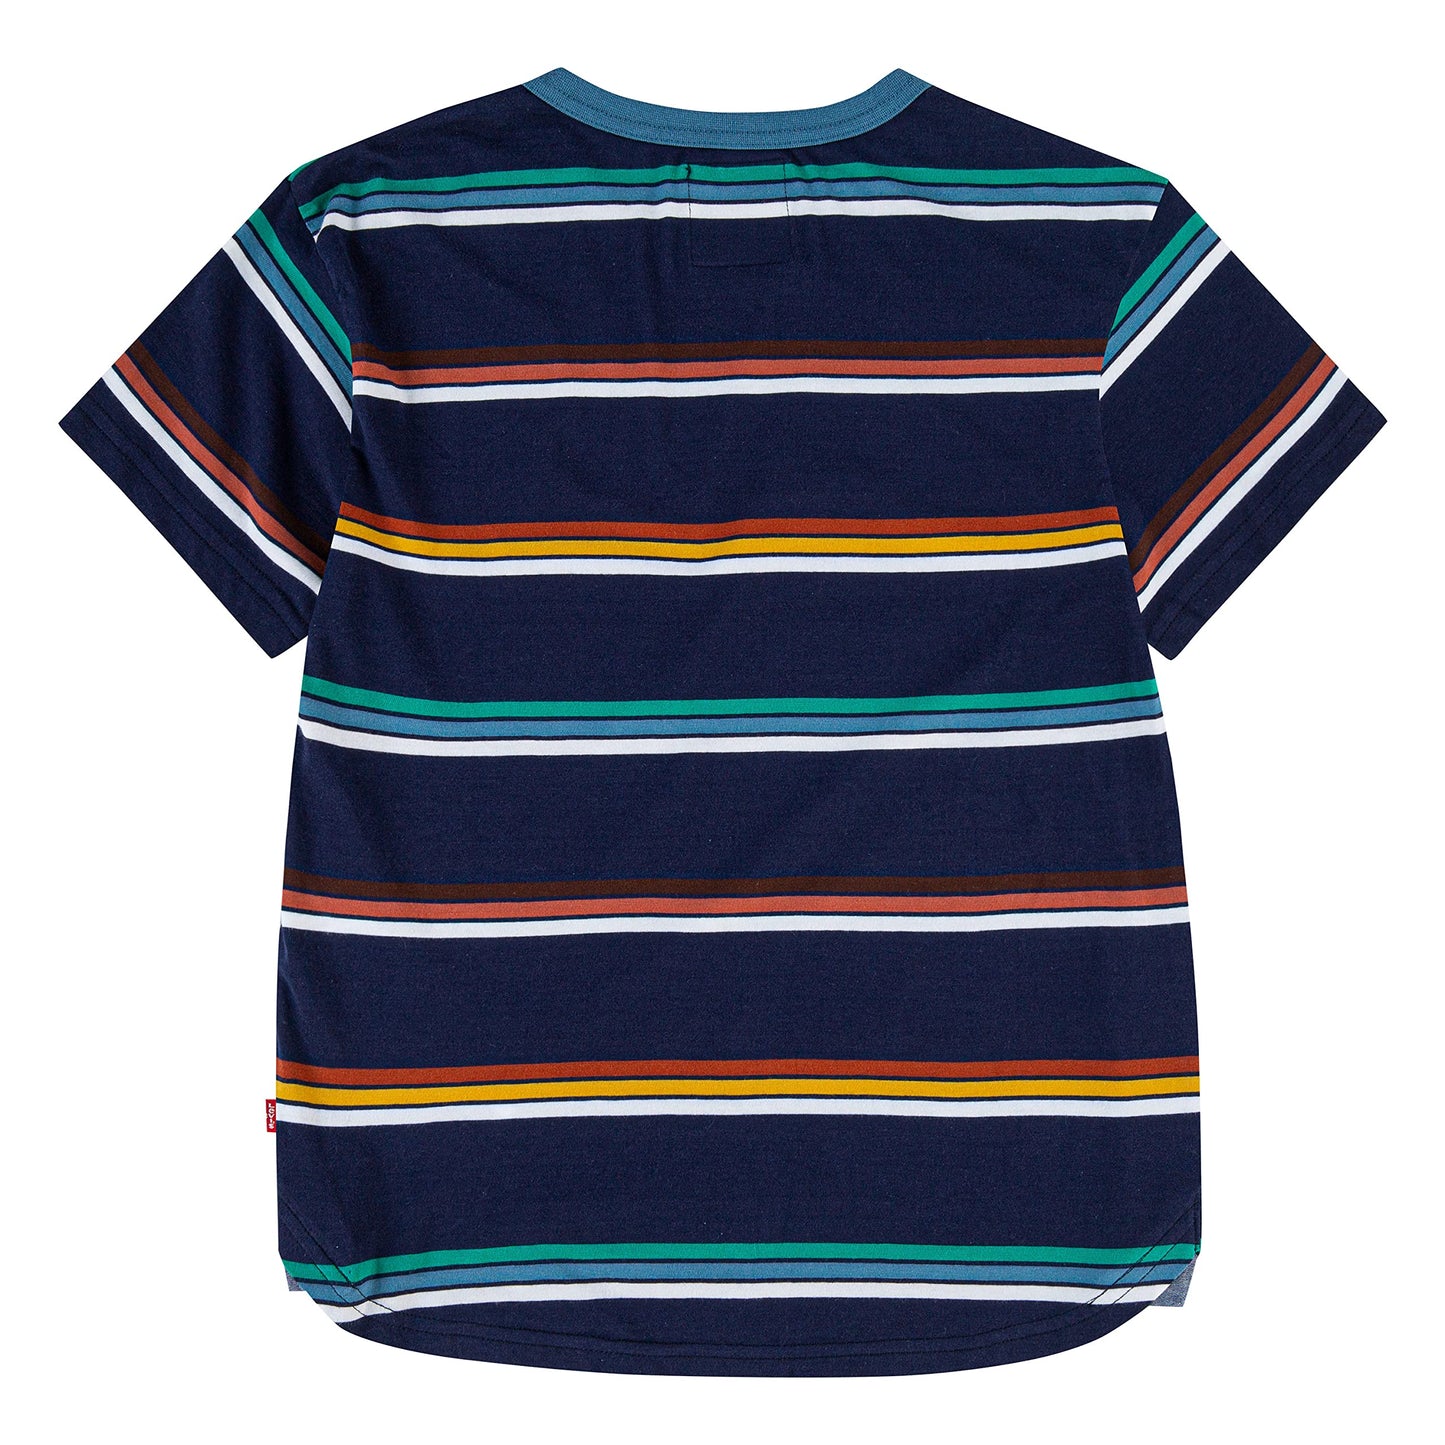 Image 2 of Striped Ringer Tee Shirt (Big Kids)